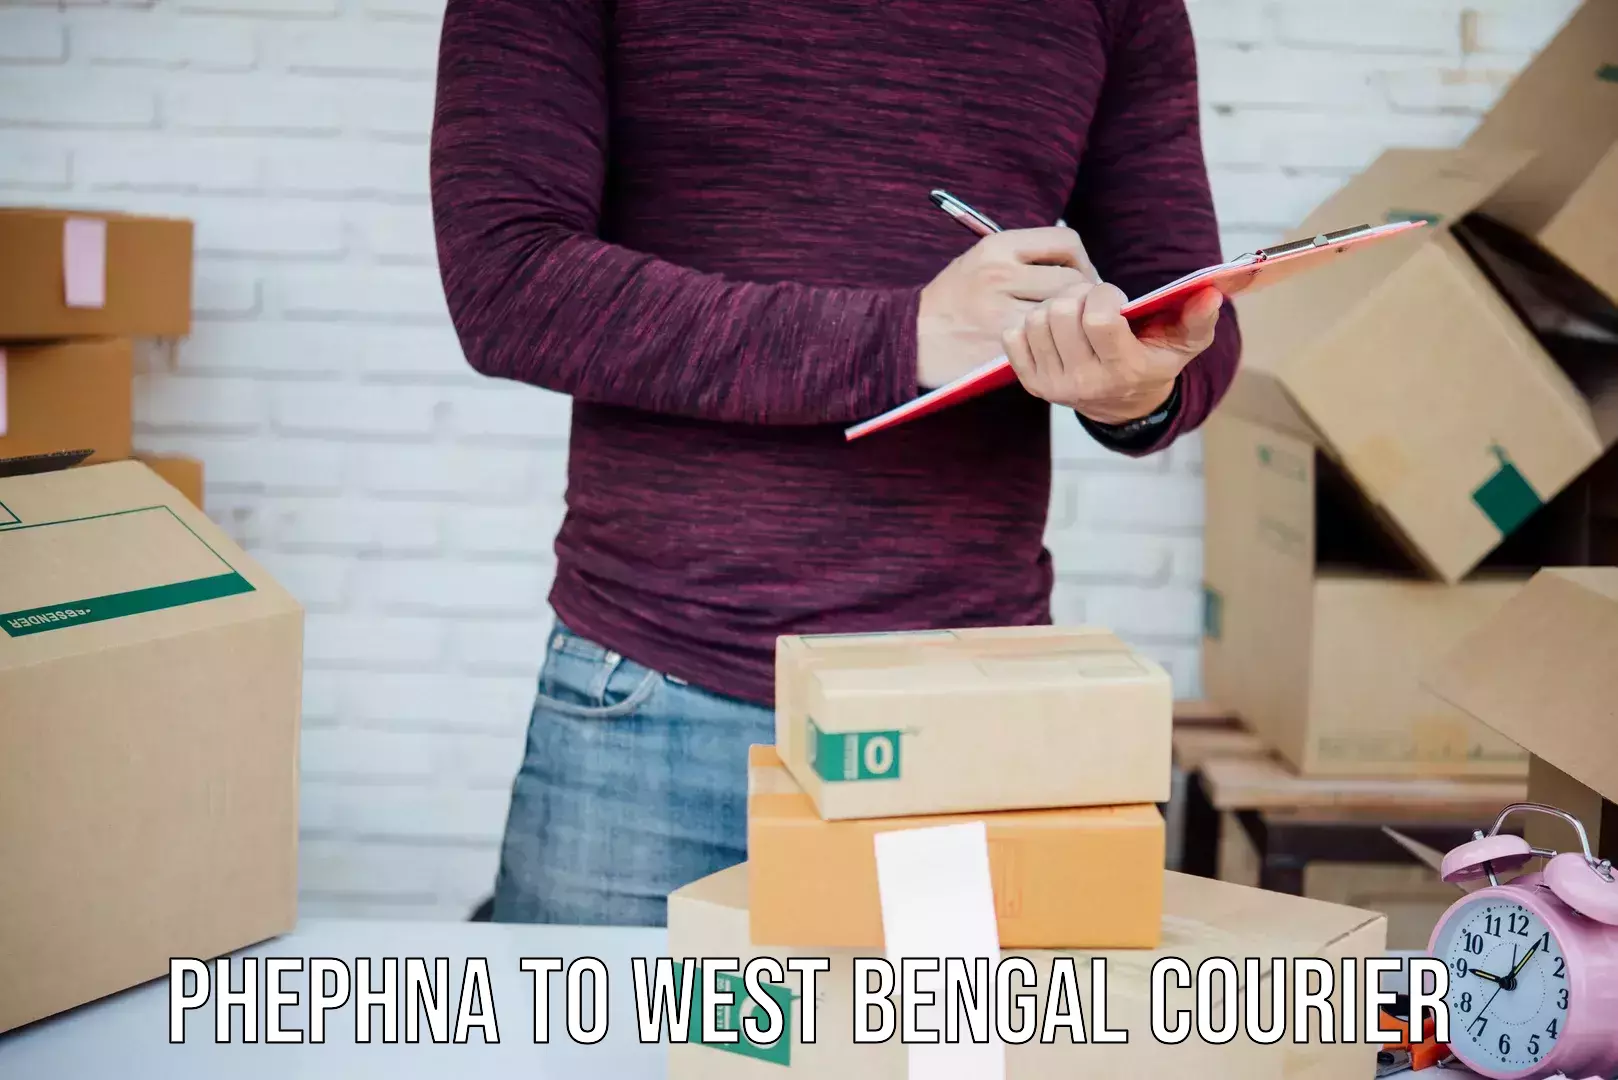 Efficient parcel delivery Phephna to Tribeni